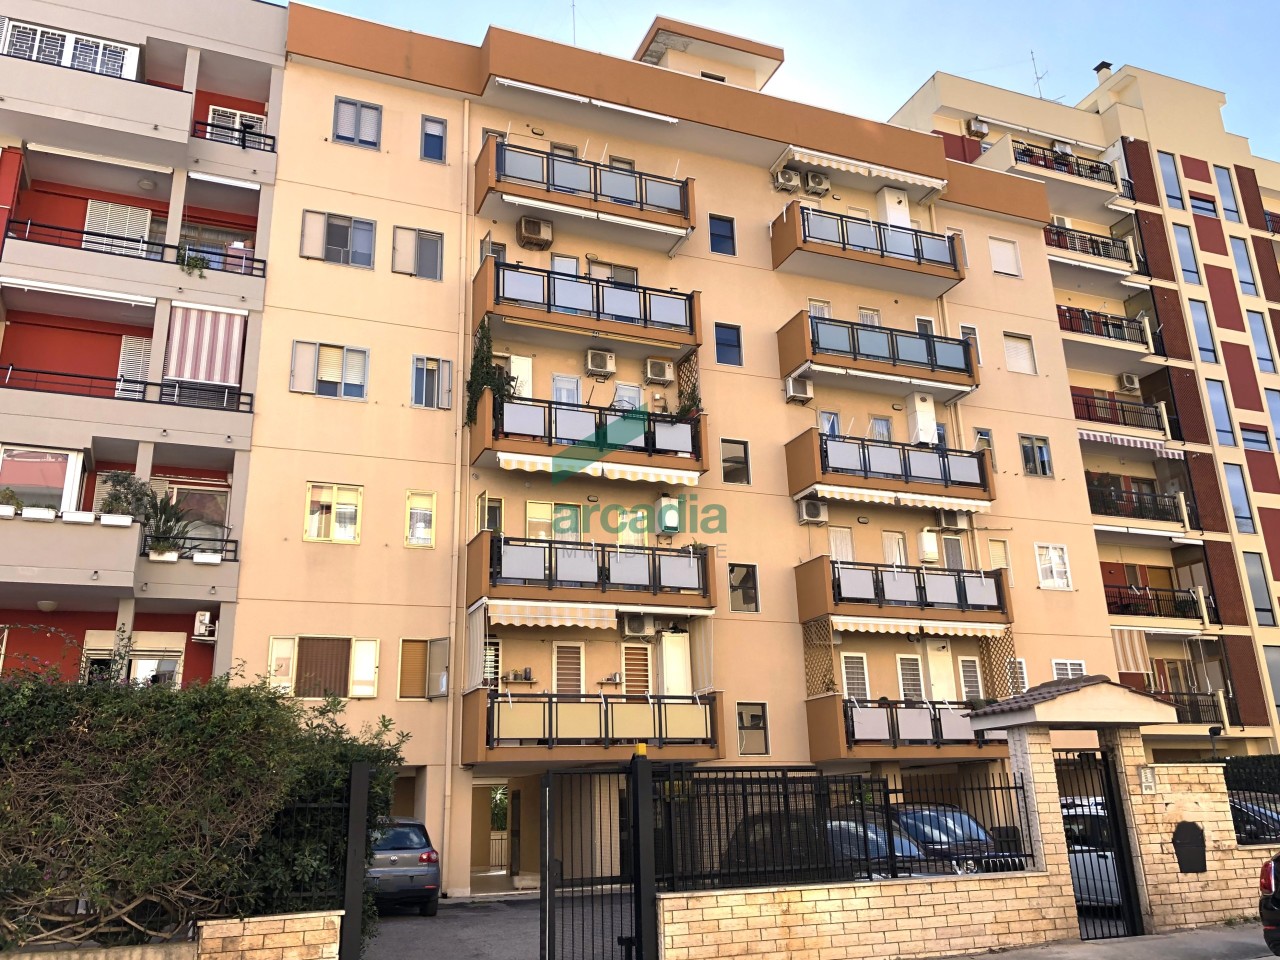 Appartamento in affitto a Bari, 5 locali, prezzo € 800 | PortaleAgenzieImmobiliari.it